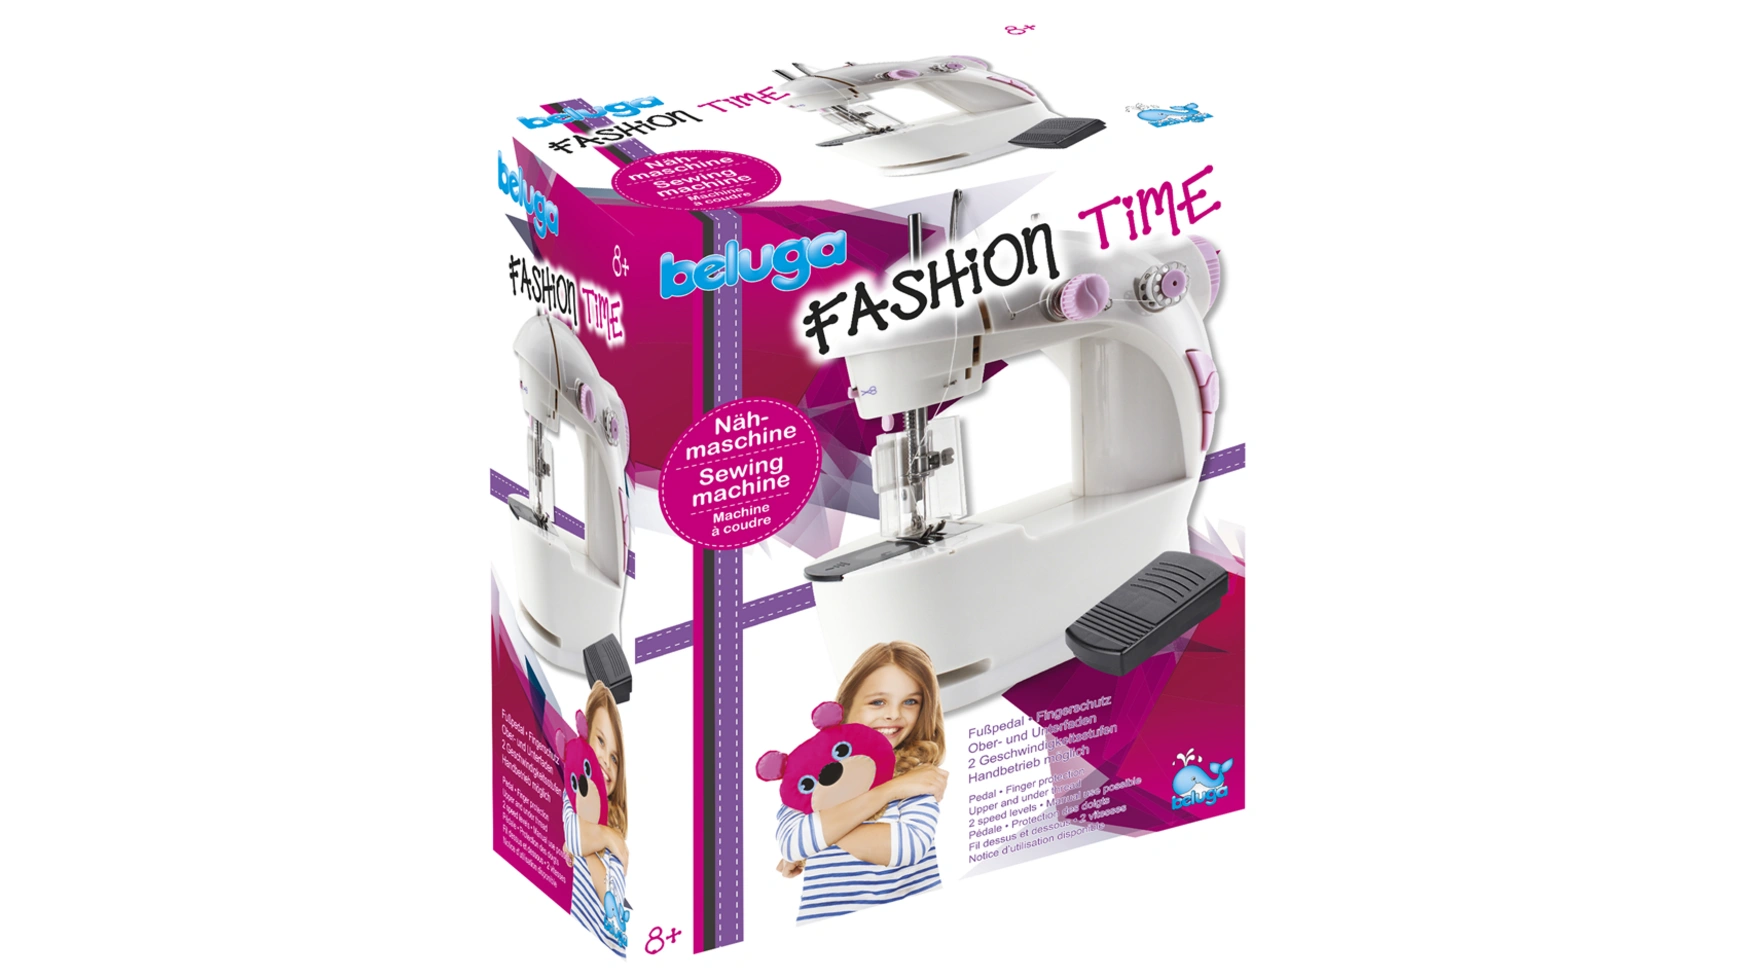 Beluga Швейная машина Fashion Time ролевые игры bondibon игровая швейная машина я умею шить вв4596